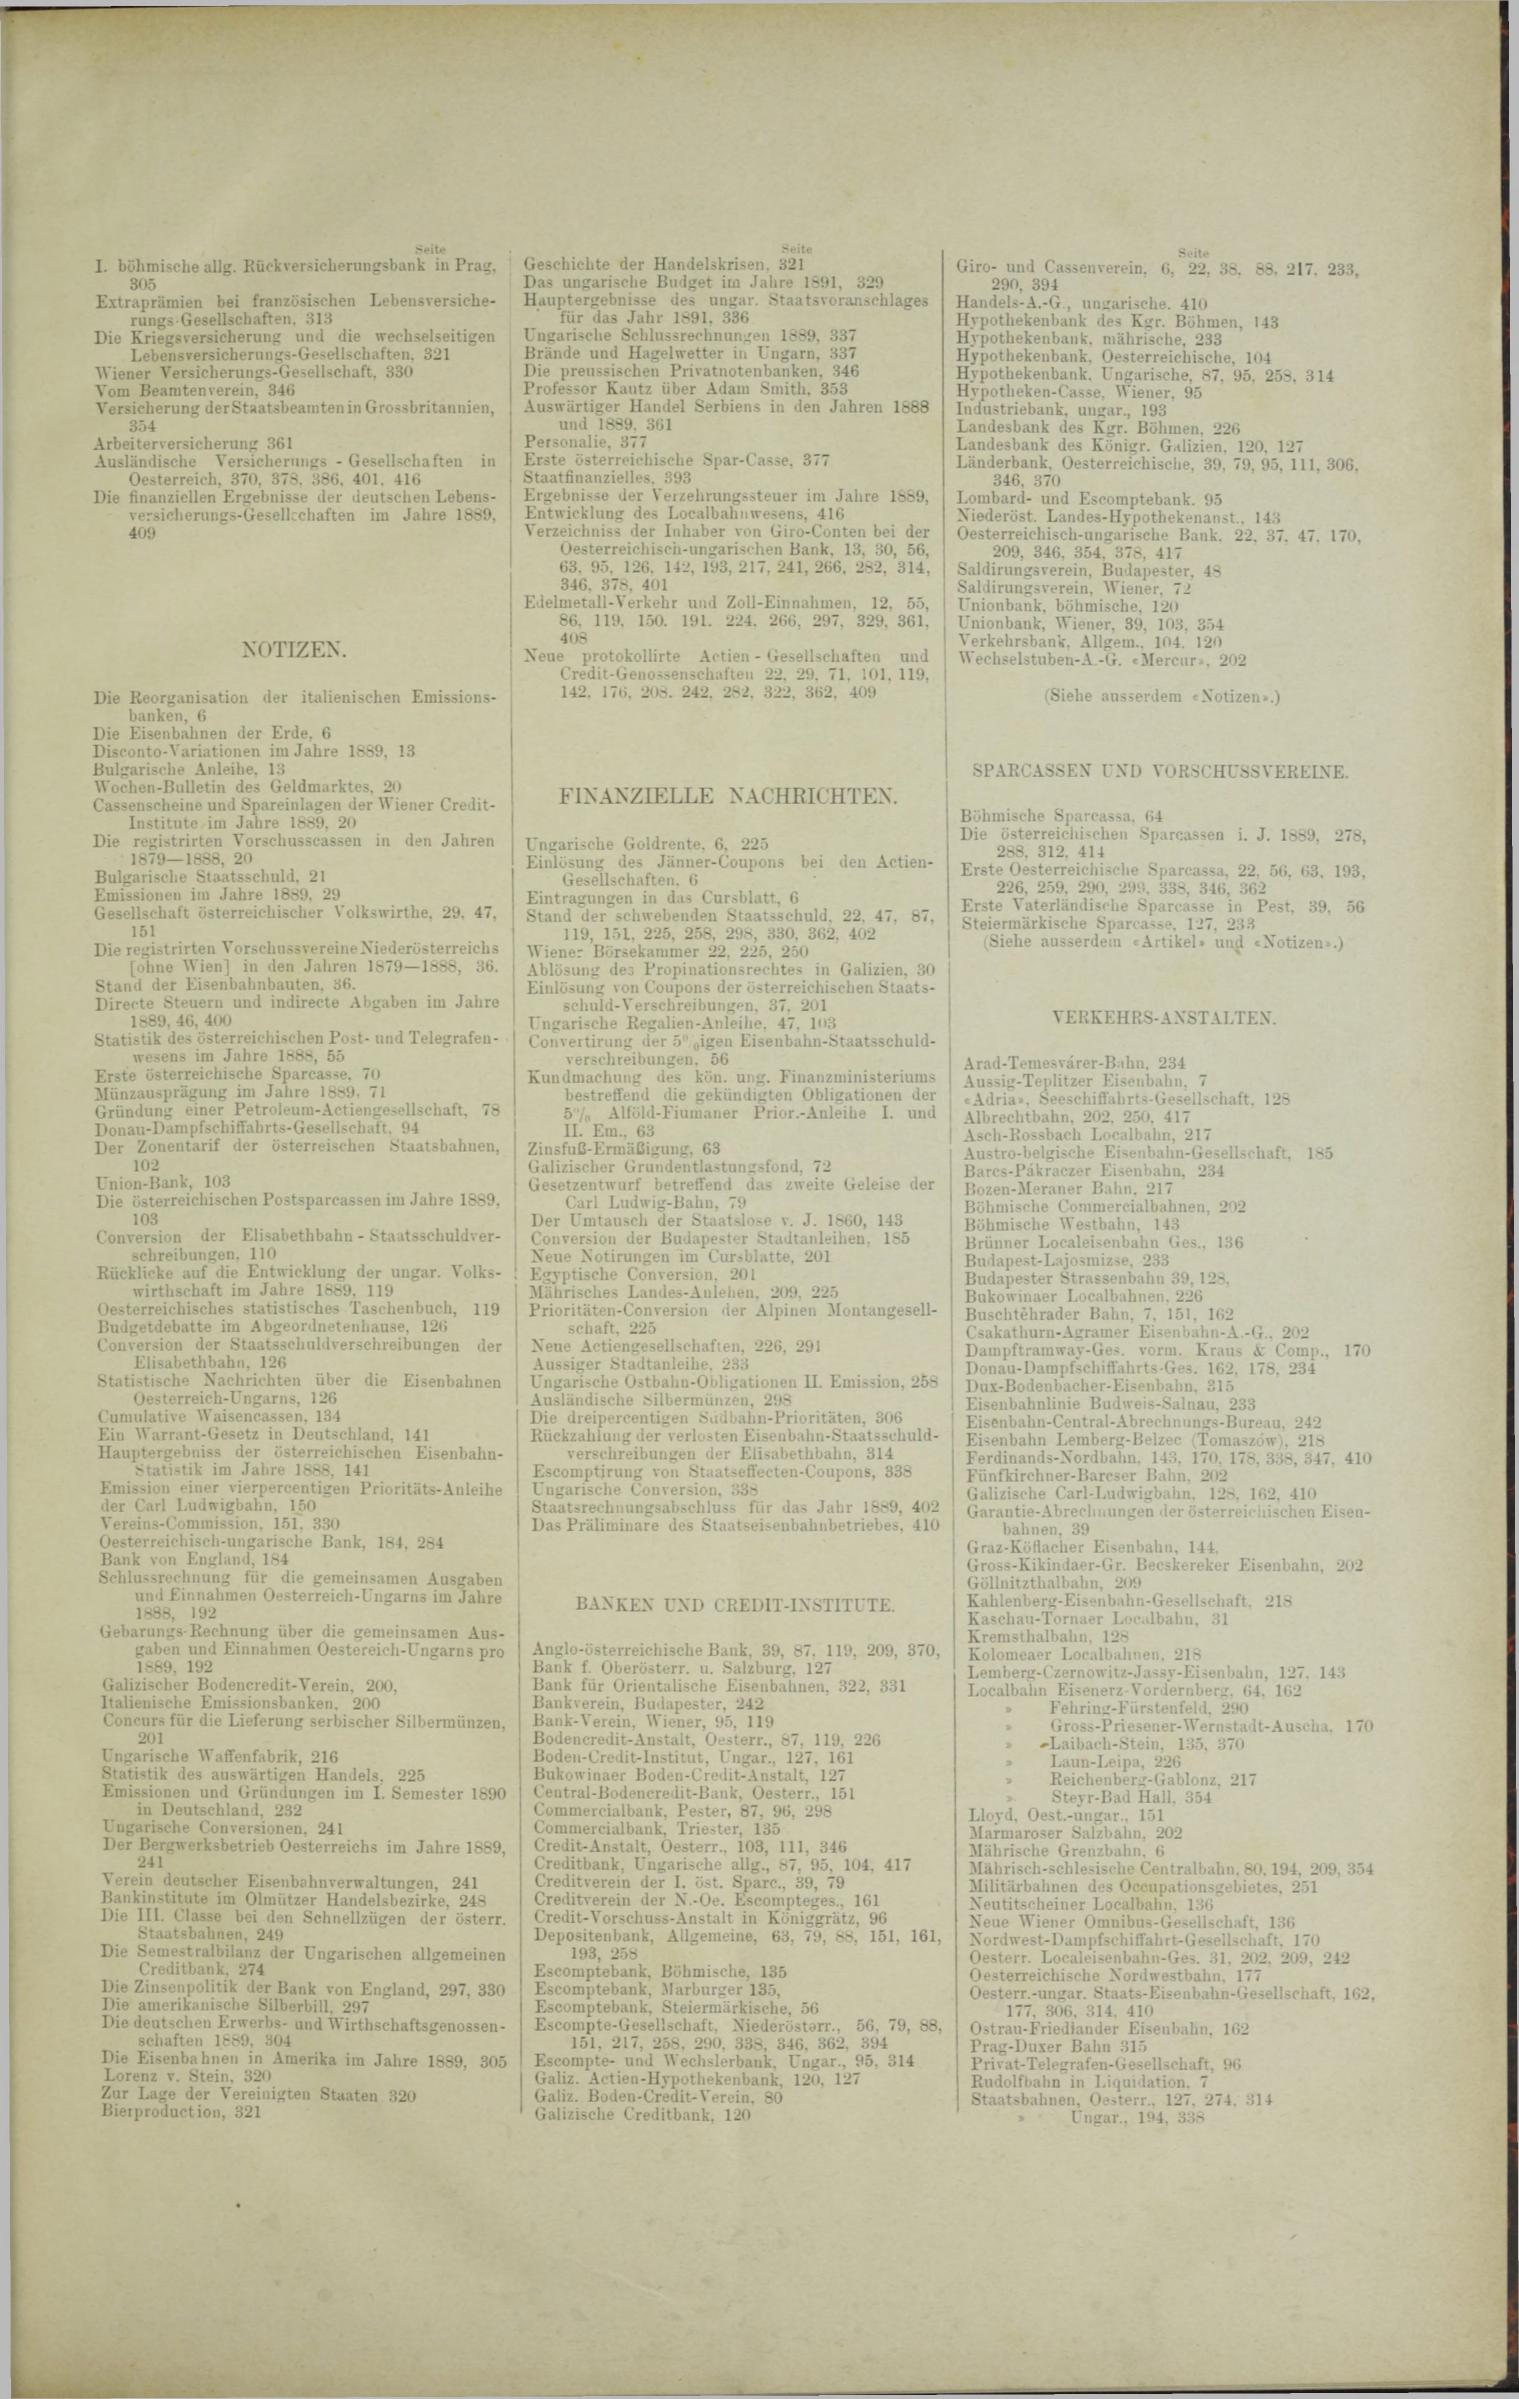 Der Tresor 26.06.1890 - Seite 11